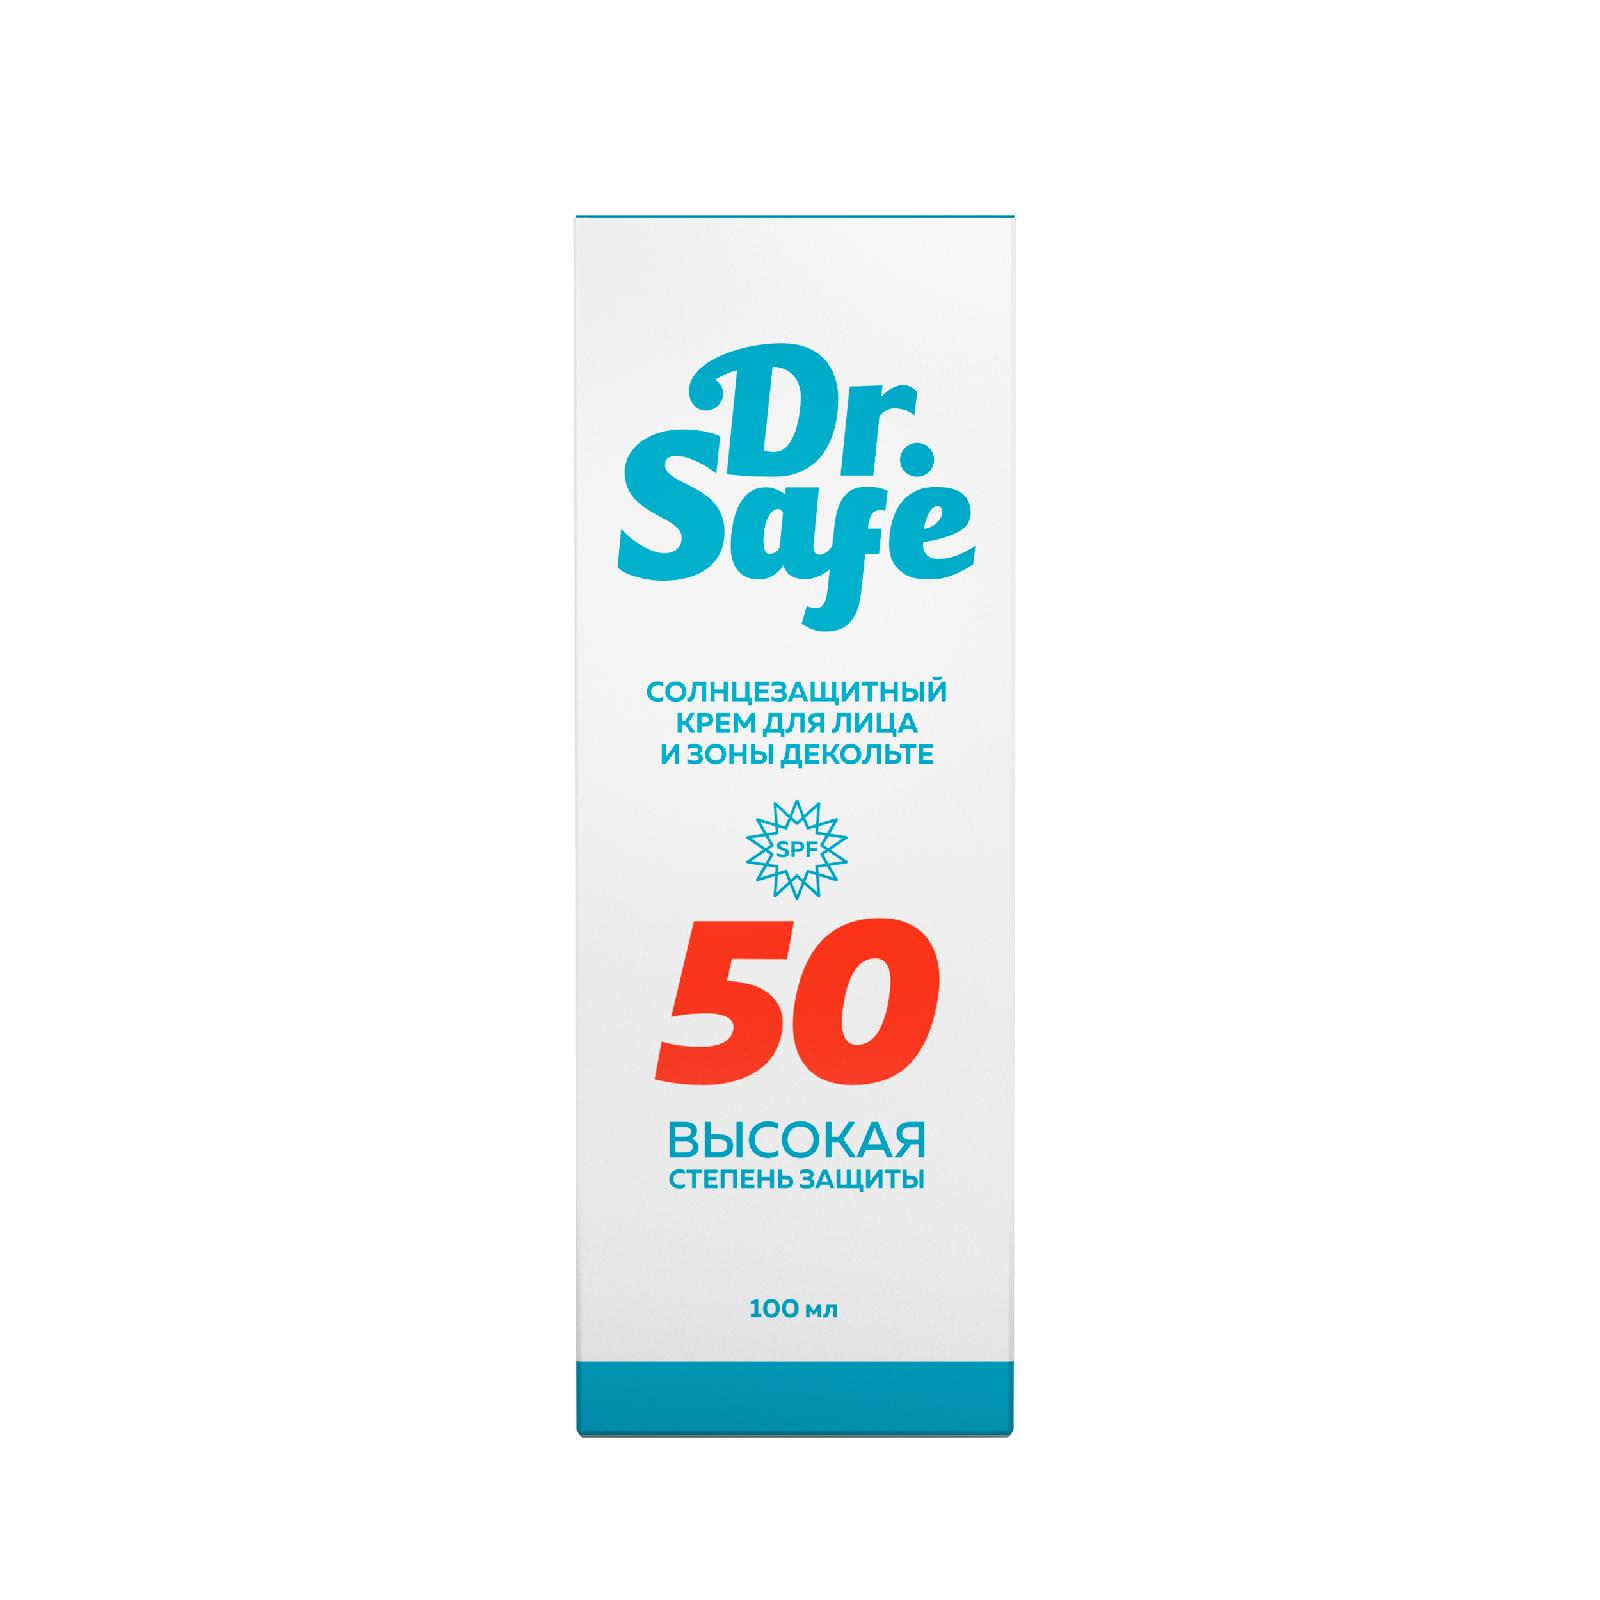 Солнцезащитный крем для лица DR.SAFE 50 SPF, 100 мл prosto cosmetics солнцезащитный крем для лица just happy с высокой степенью защиты от ультрафиолета 50 0